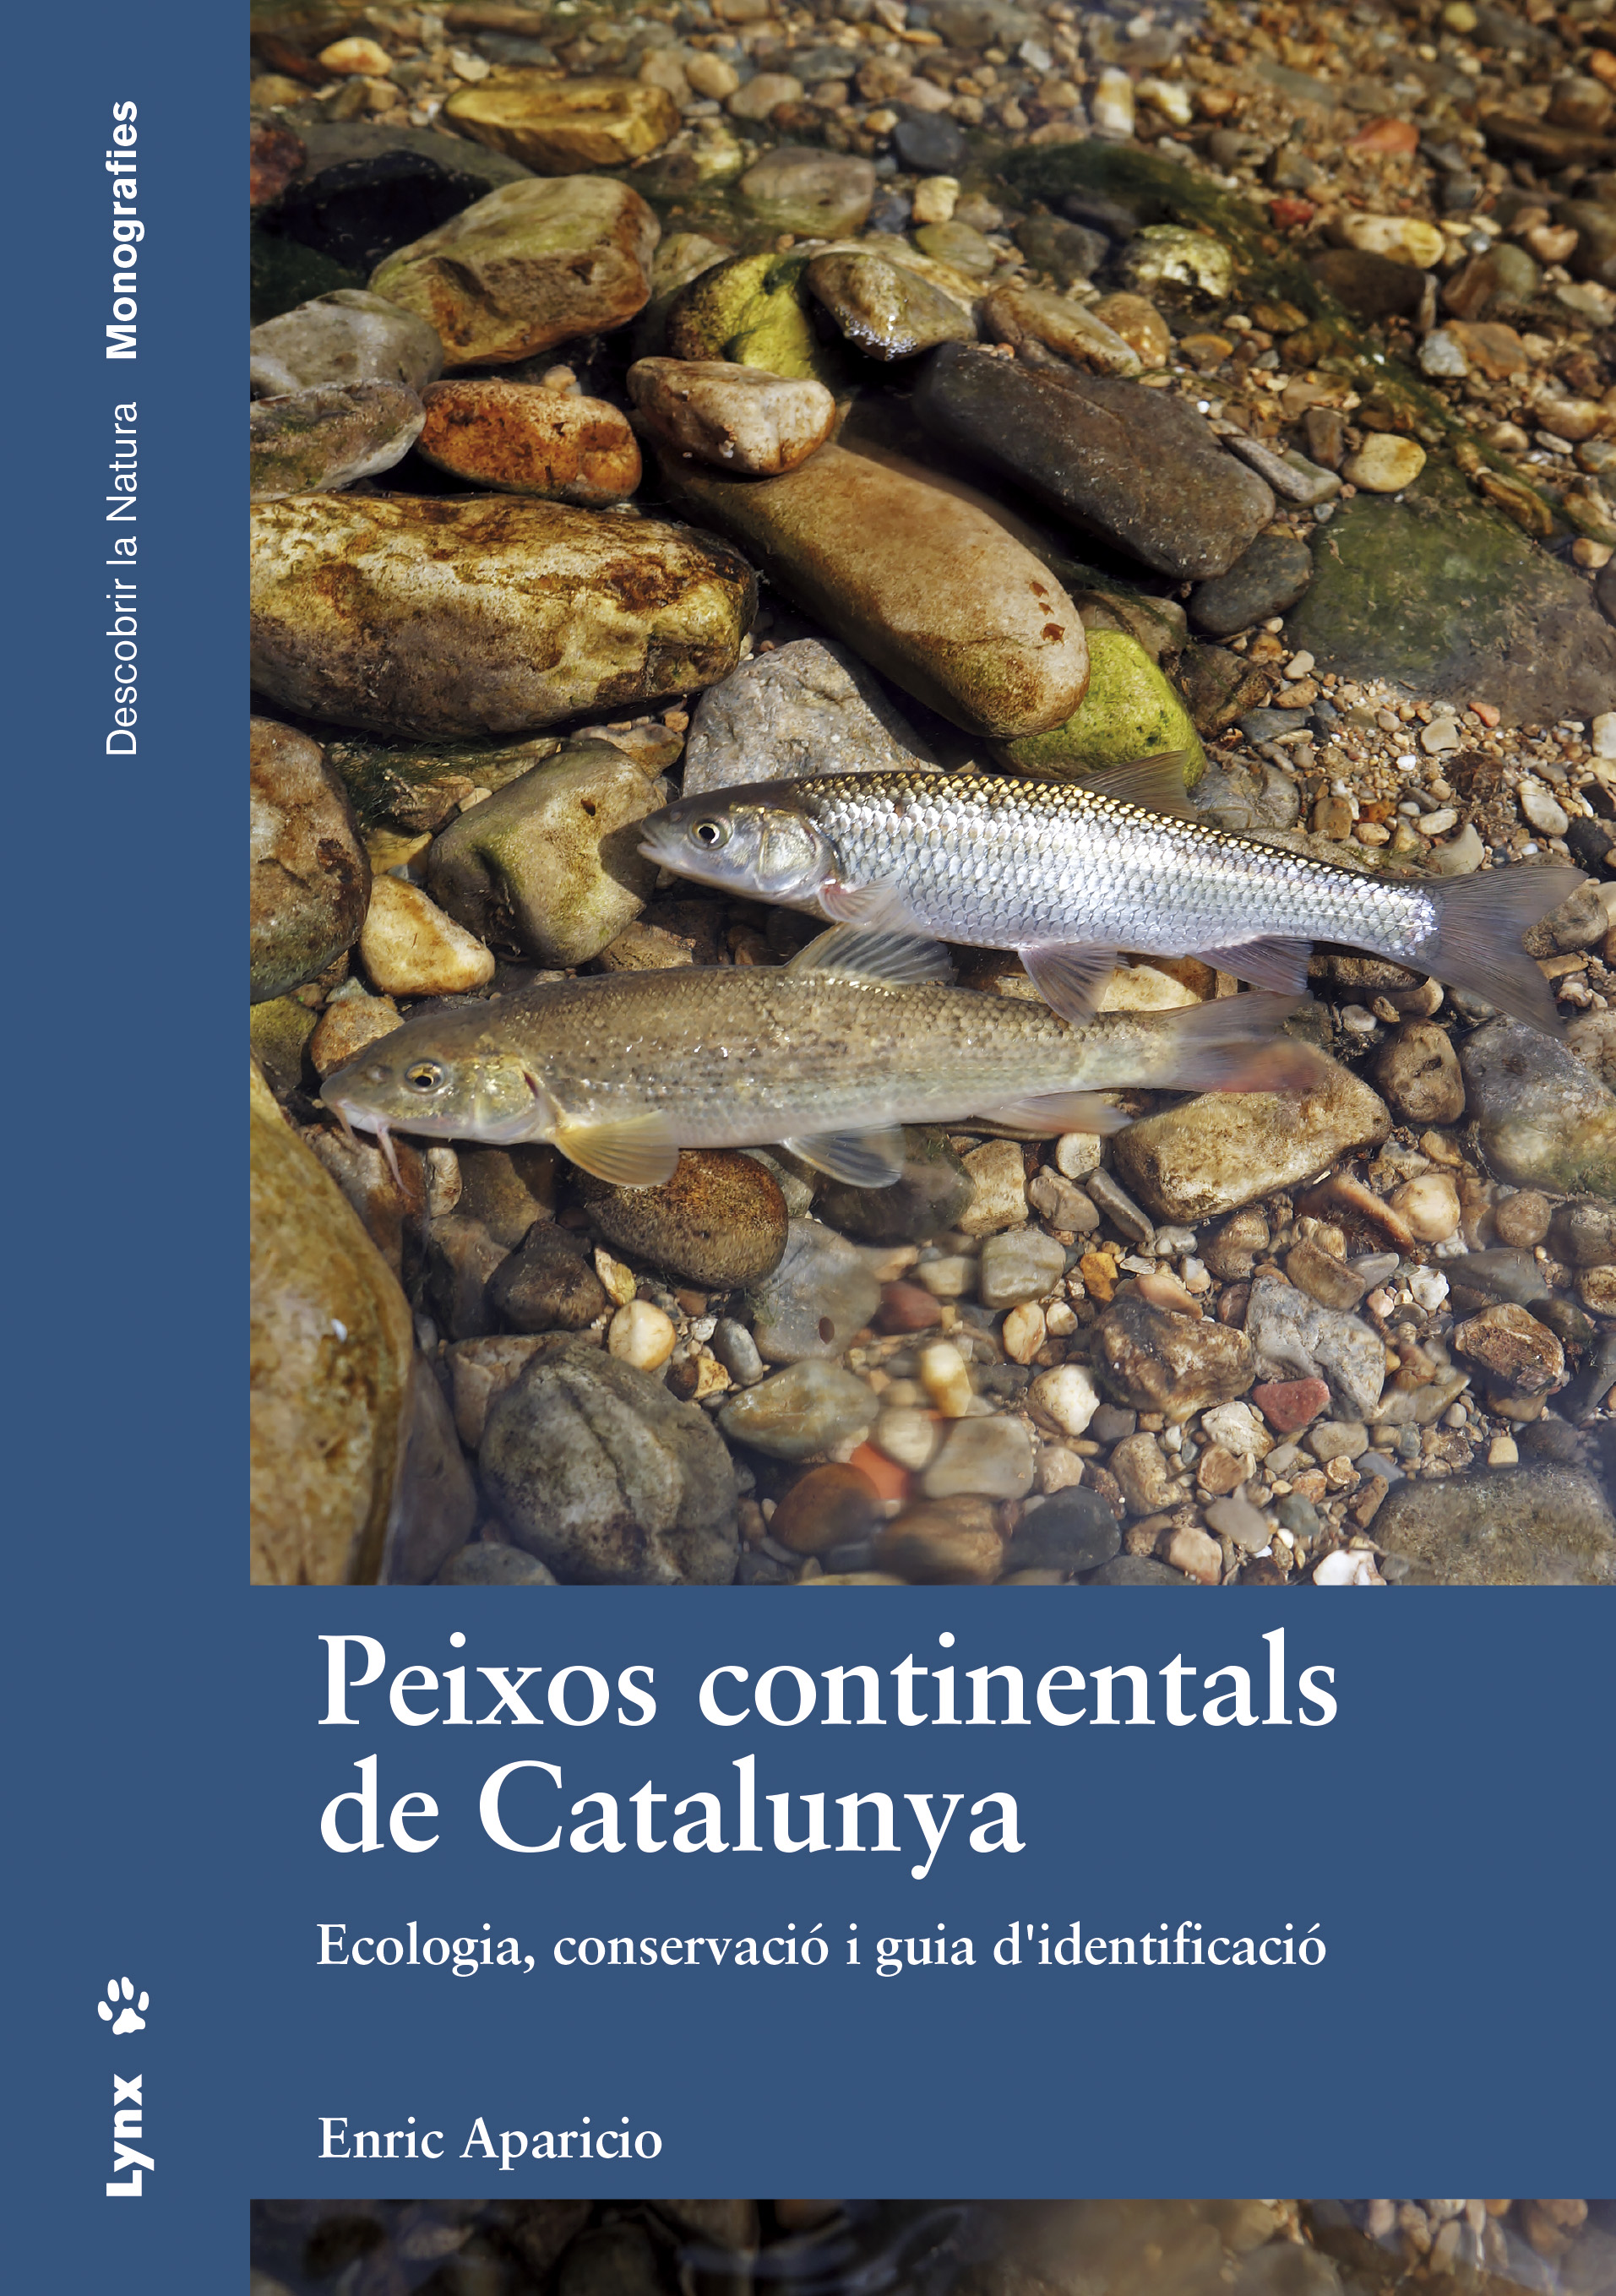 peixos-continentals-de-catalunya_coberta